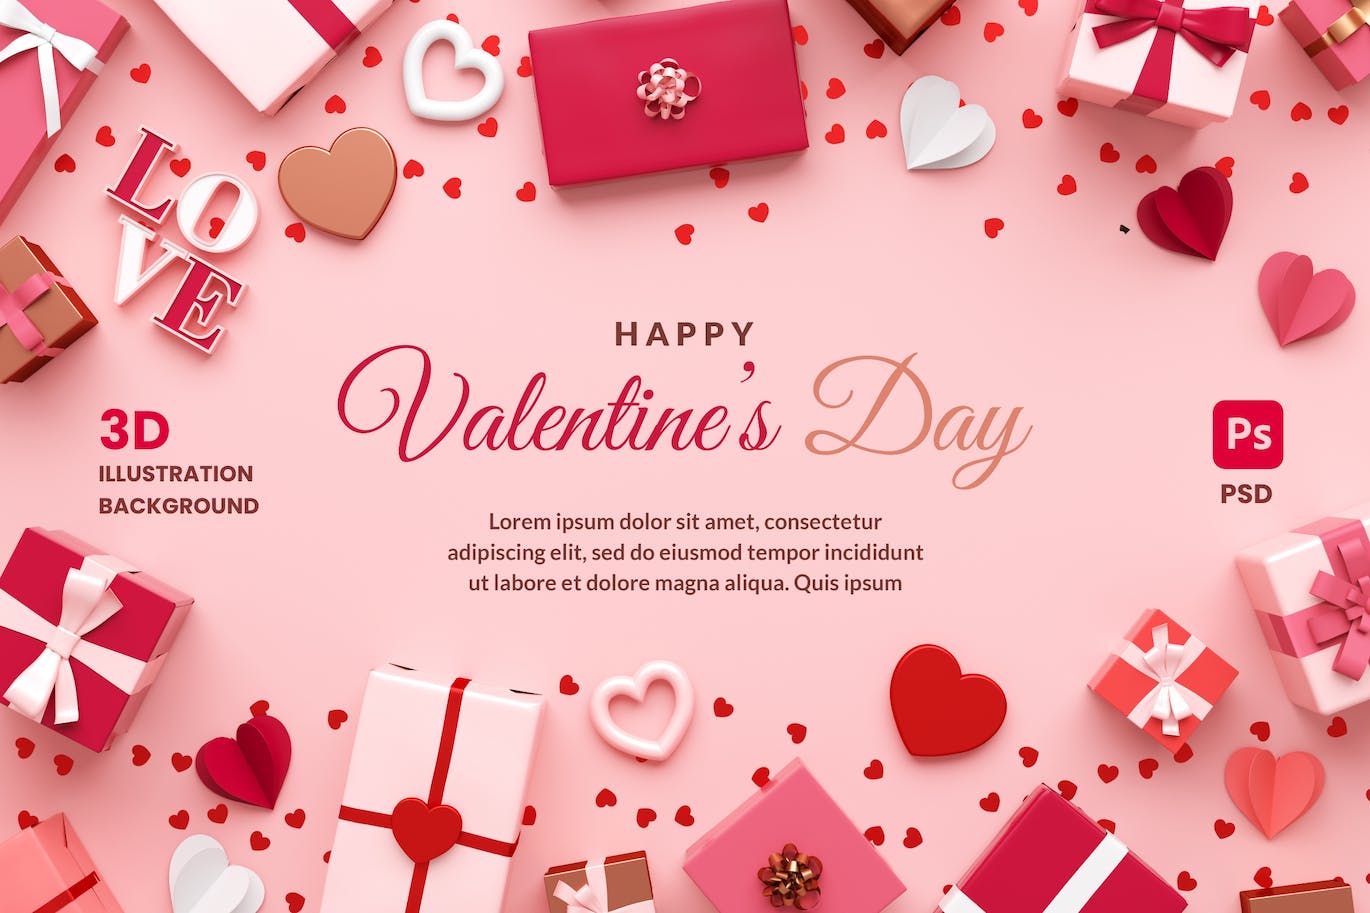 情人节礼品3D Banner背景模板 Valentines Day Banner Background with Gifts 设计素材 第1张